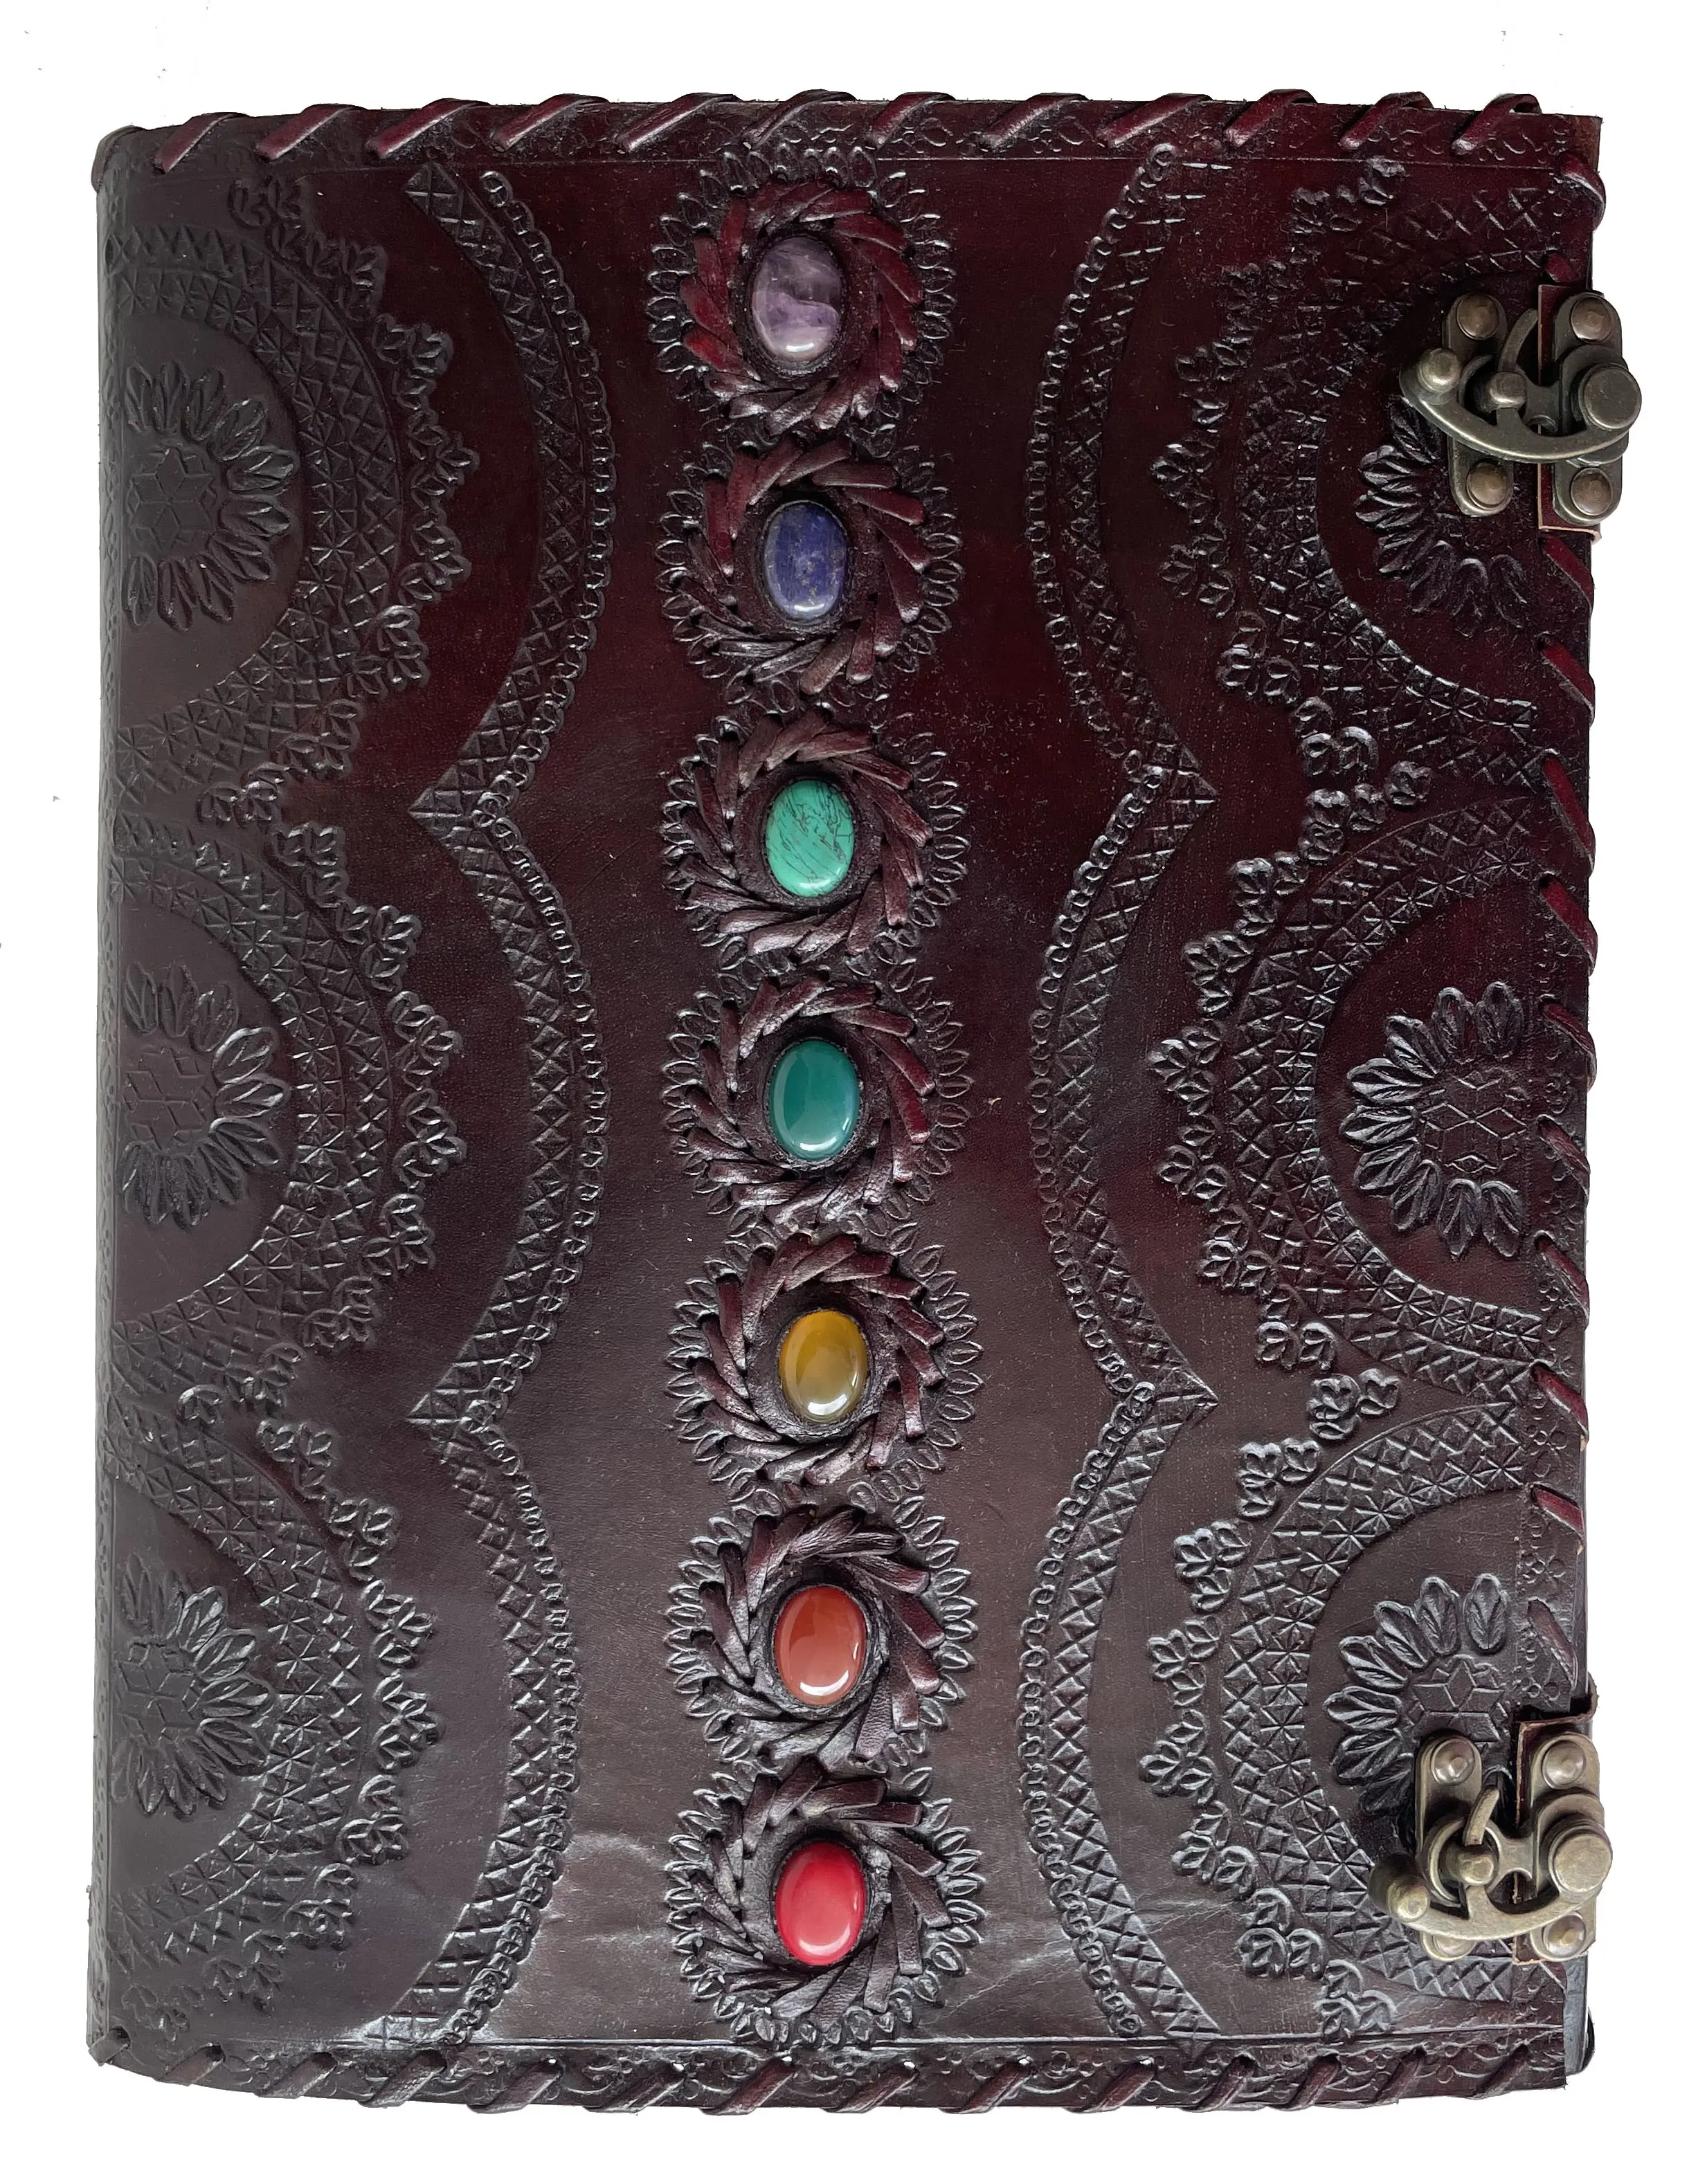 Jurnal kulit tujuh batu cokelat timbul buatan tangan buku kertas buku sketsa buku catatan eyeshadow jurnal kulit antik